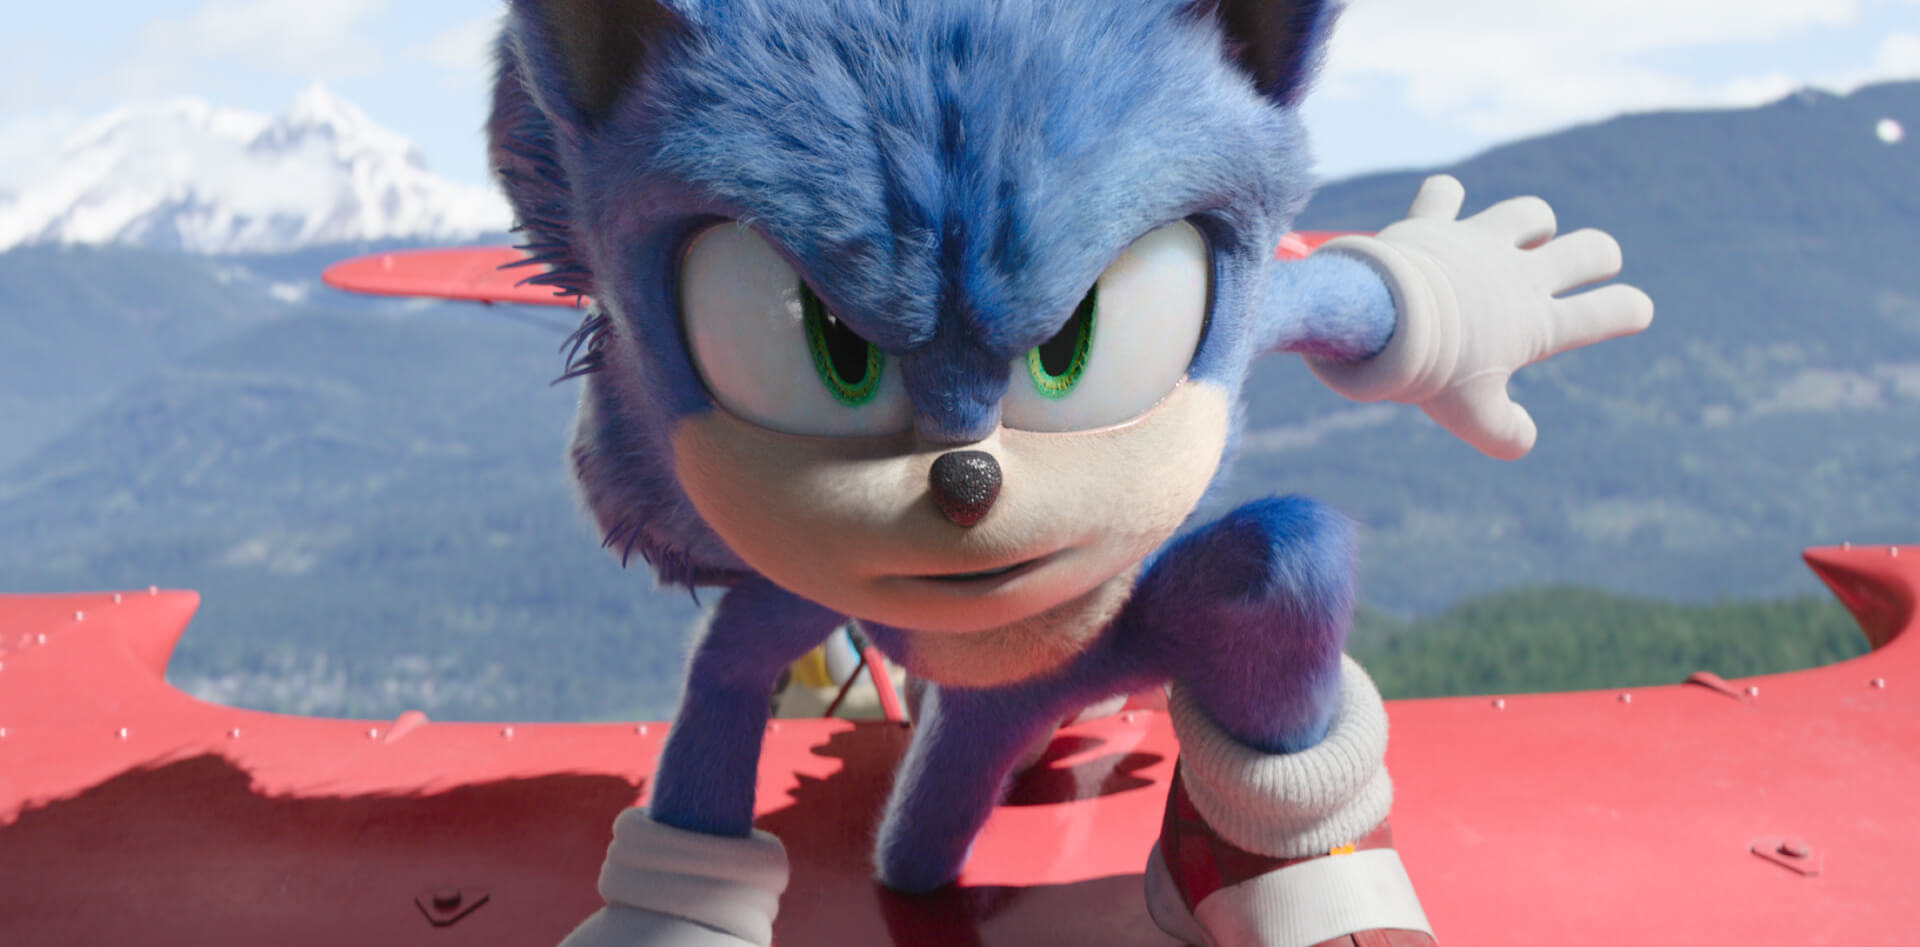 [SBLVI] Az új teaser előzetesben egy epikus csata van kibontakozóban Sonic és Knucles között